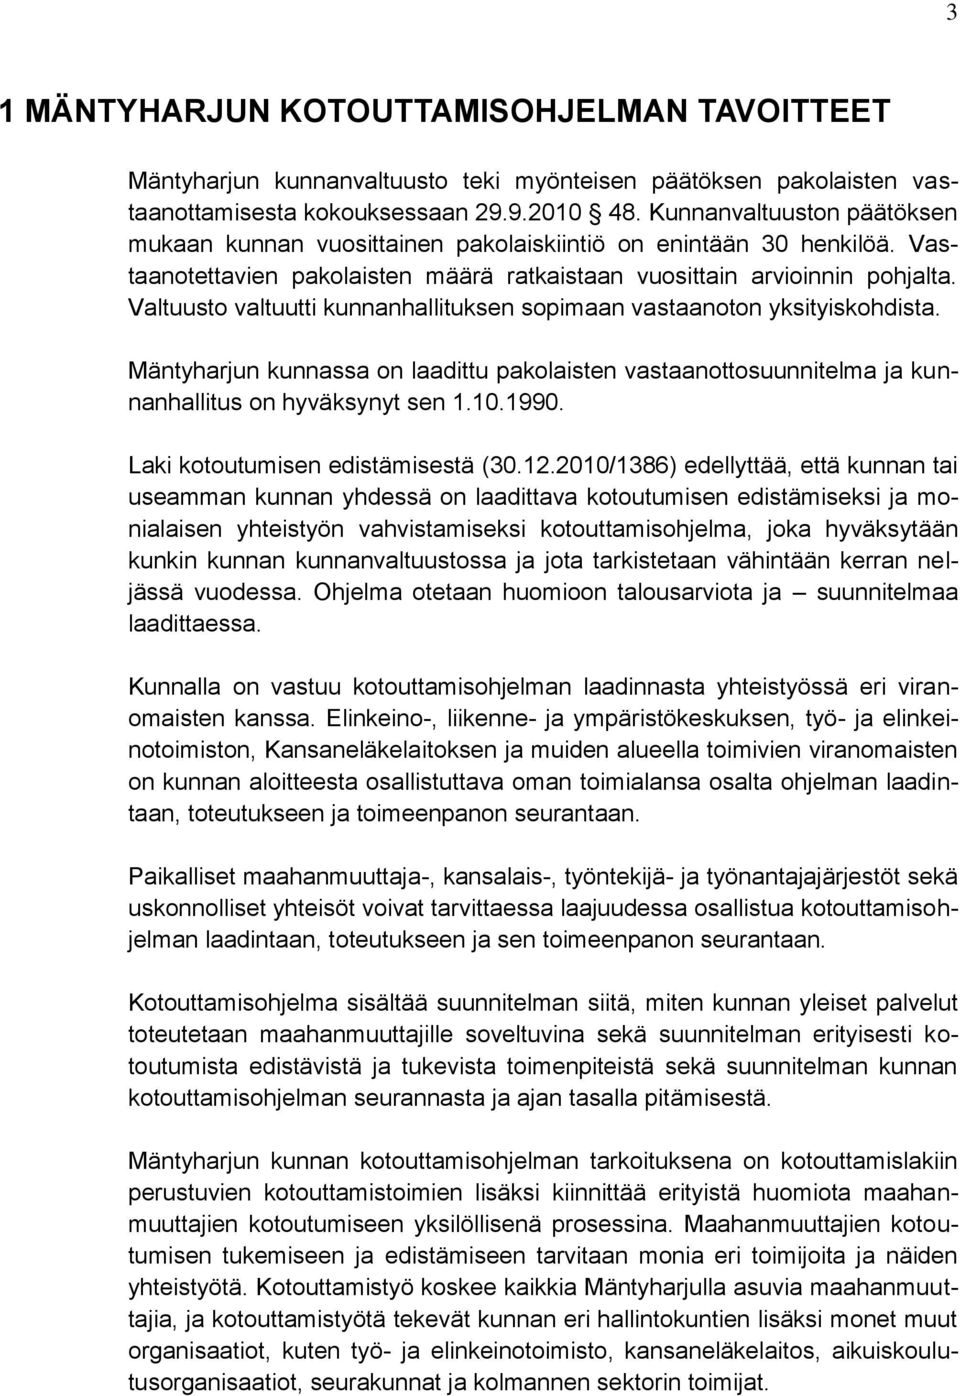 Valtuusto valtuutti kunnanhallituksen sopimaan vastaanoton yksityiskohdista. Mäntyharjun kunnassa on laadittu pakolaisten vastaanottosuunnitelma ja kunnanhallitus on hyväksynyt sen 1.10.1990.